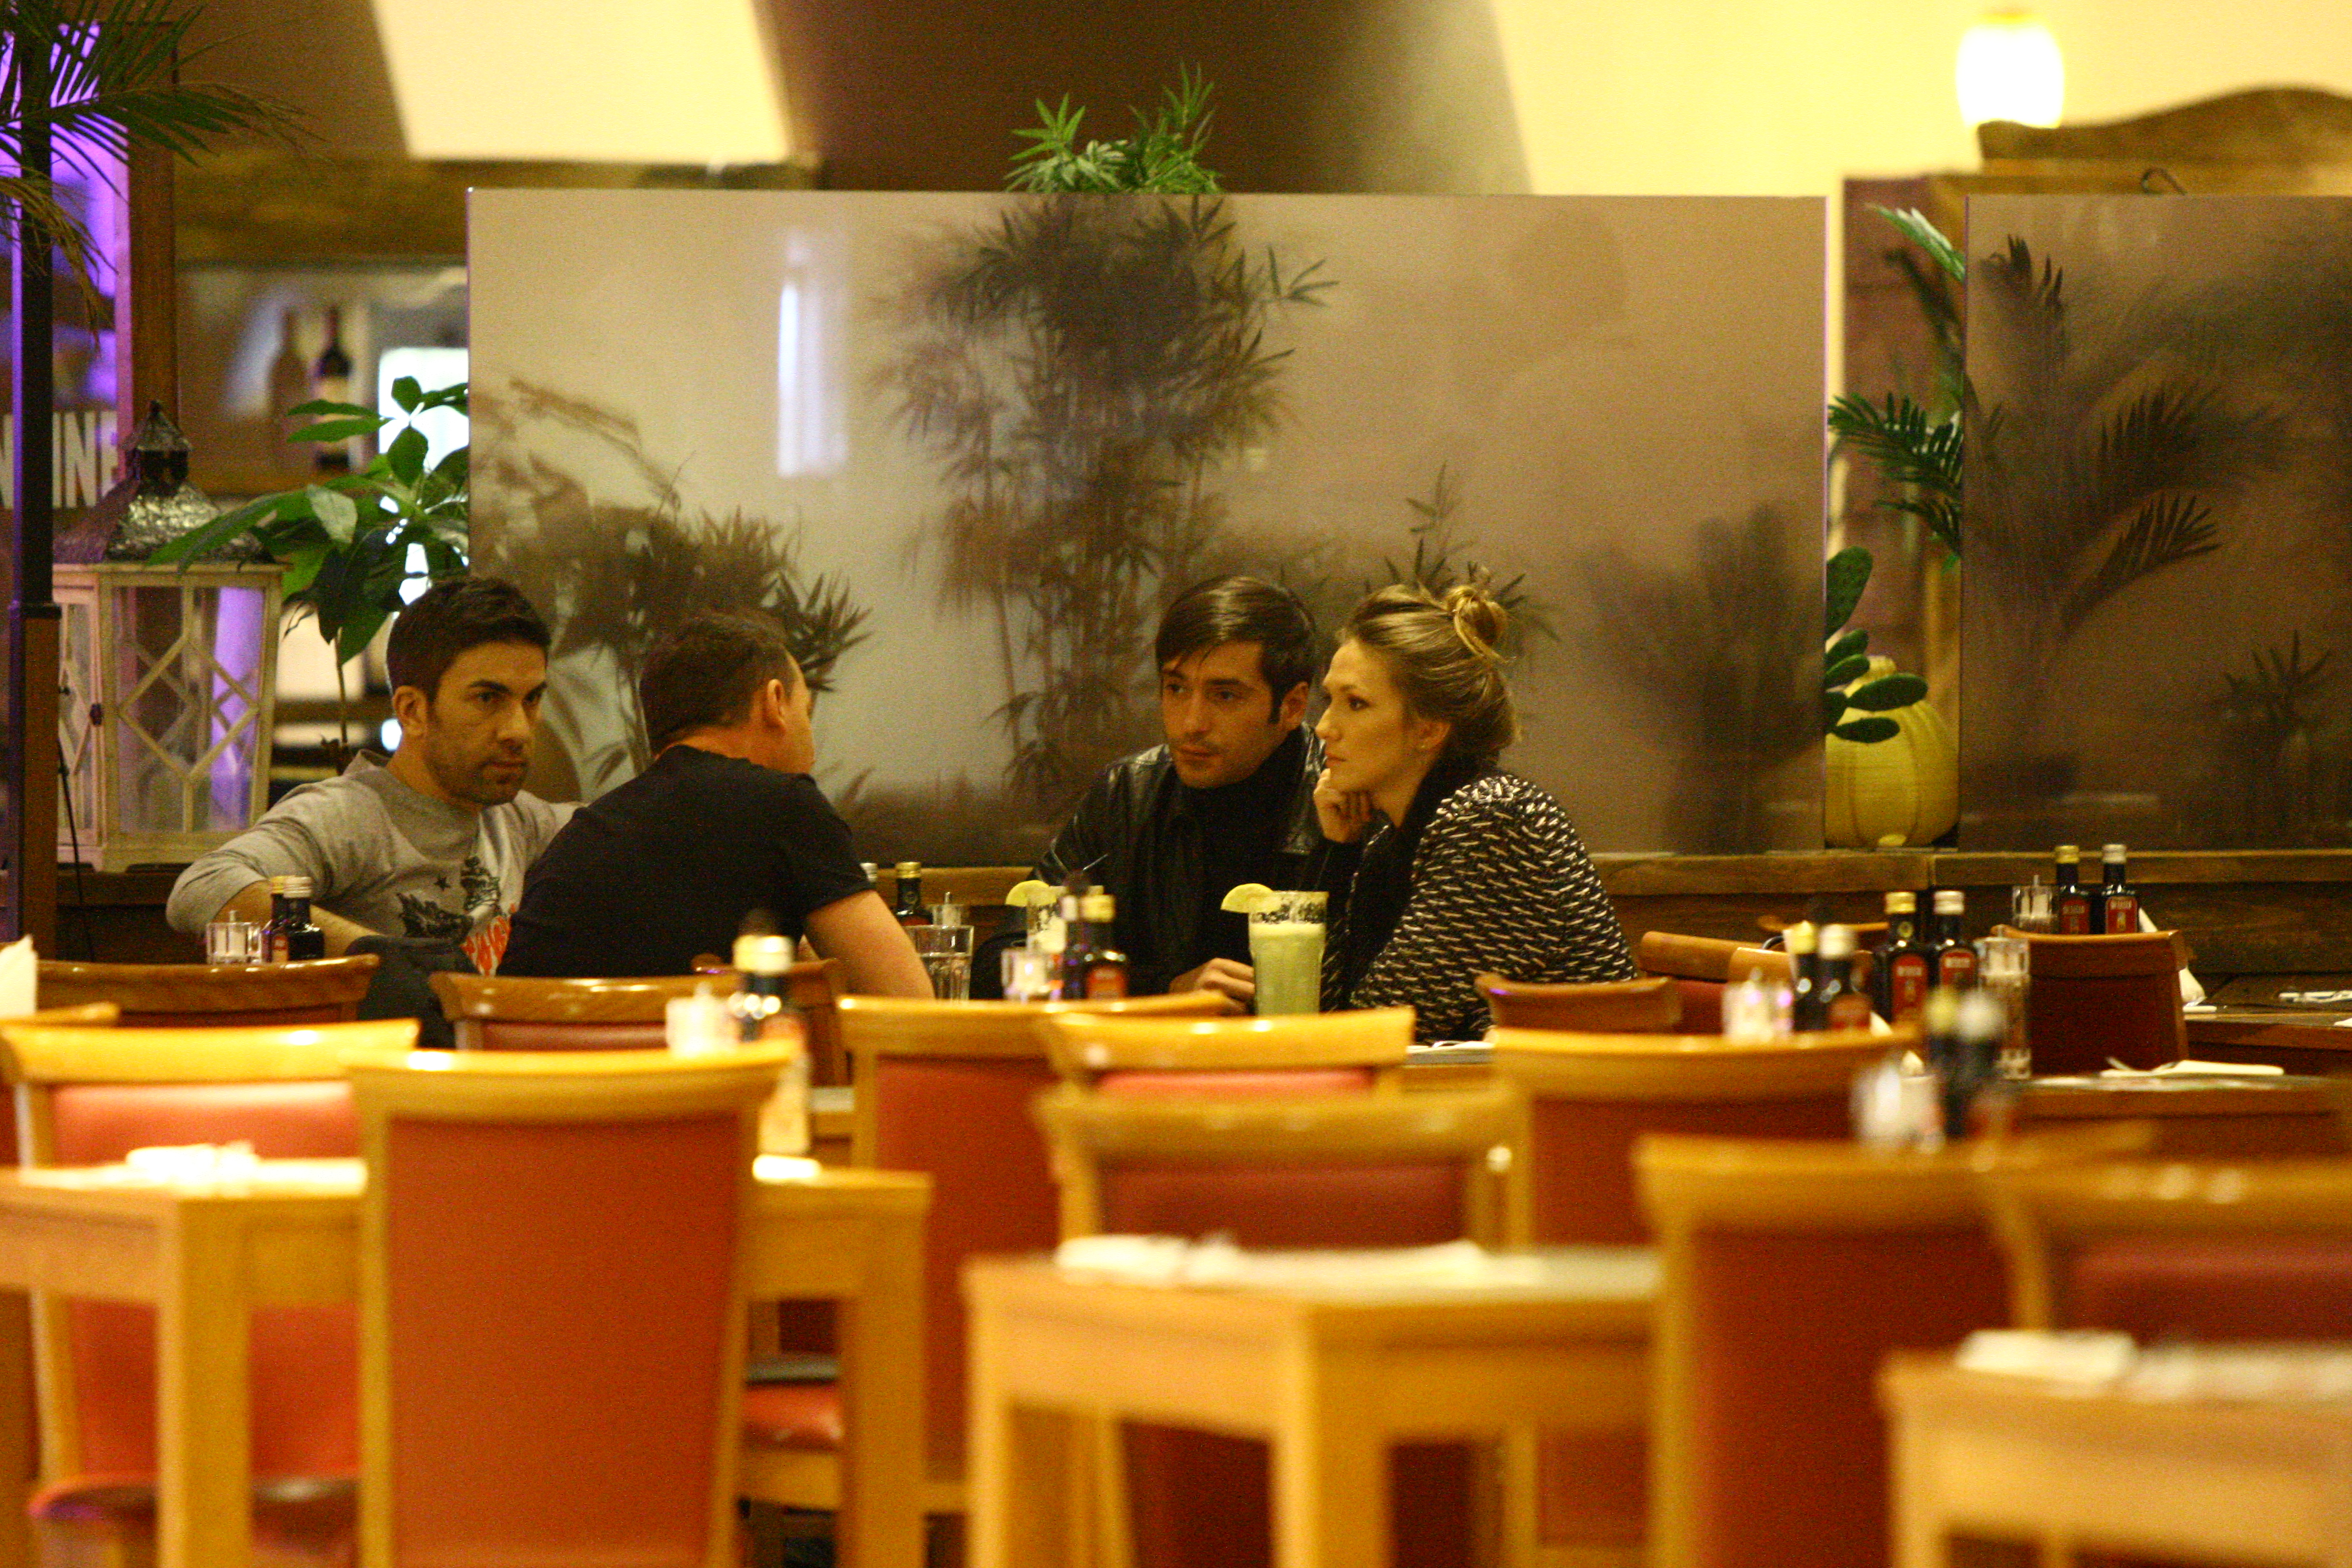 Adela, DJ Project si Radu Valcan s-au intrunit pentru o masa buna si o discutie stufoasa, intr-un restaurant, la mall